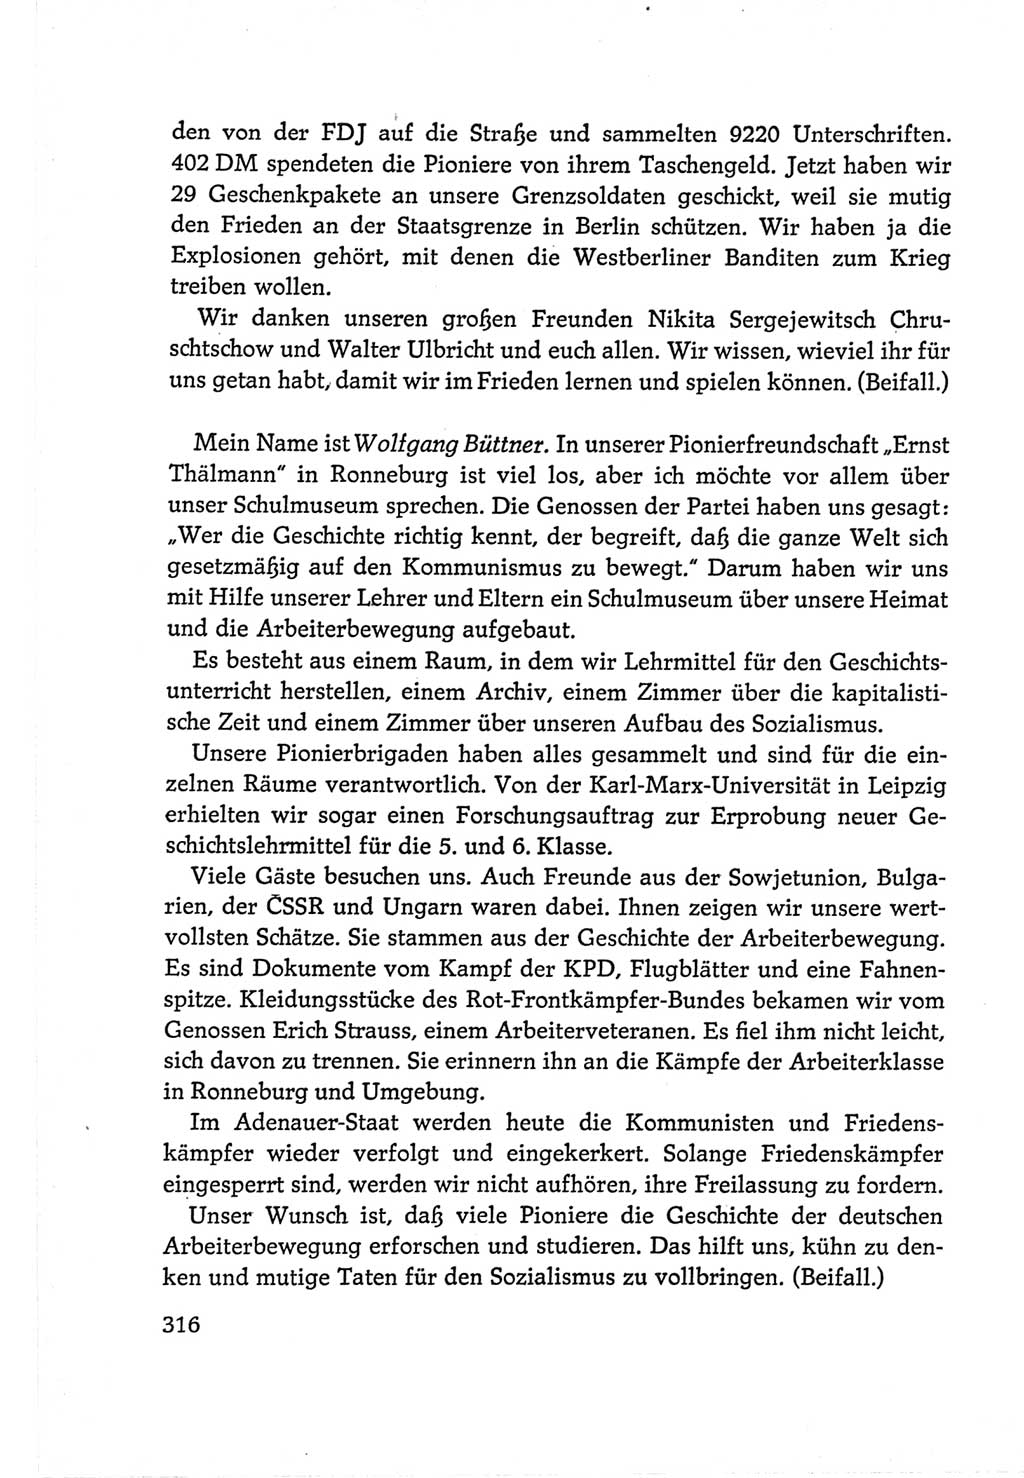 Protokoll der Verhandlungen des Ⅵ. Parteitages der Sozialistischen Einheitspartei Deutschlands (SED) [Deutsche Demokratische Republik (DDR)] 1963, Band Ⅱ, Seite 316 (Prot. Verh. Ⅵ. PT SED DDR 1963, Bd. Ⅱ, S. 316)